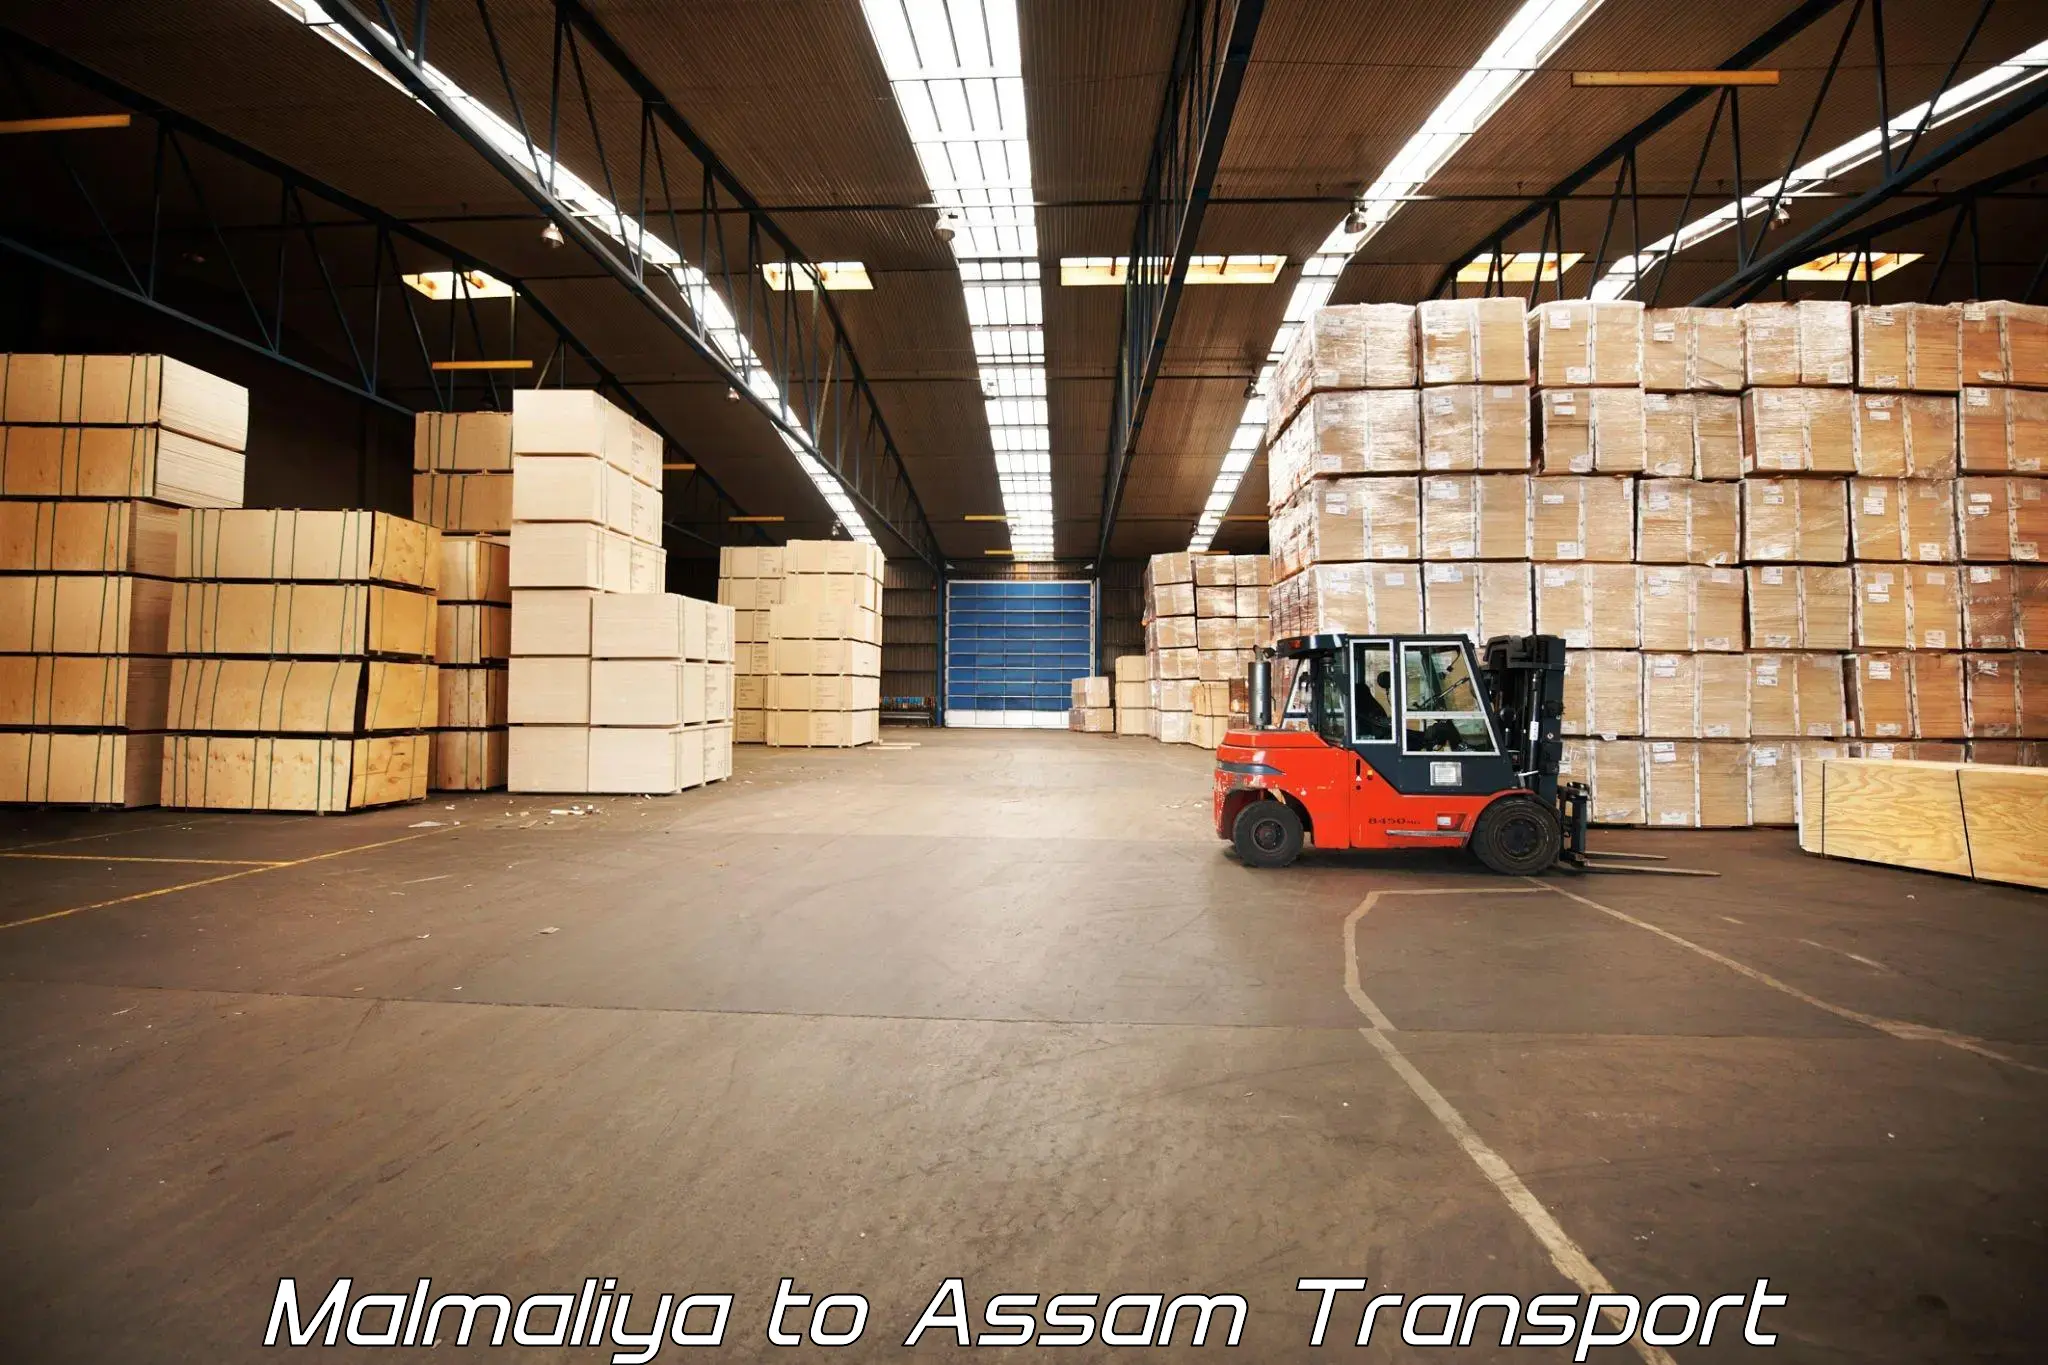 Container transport service Malmaliya to Banderdewa